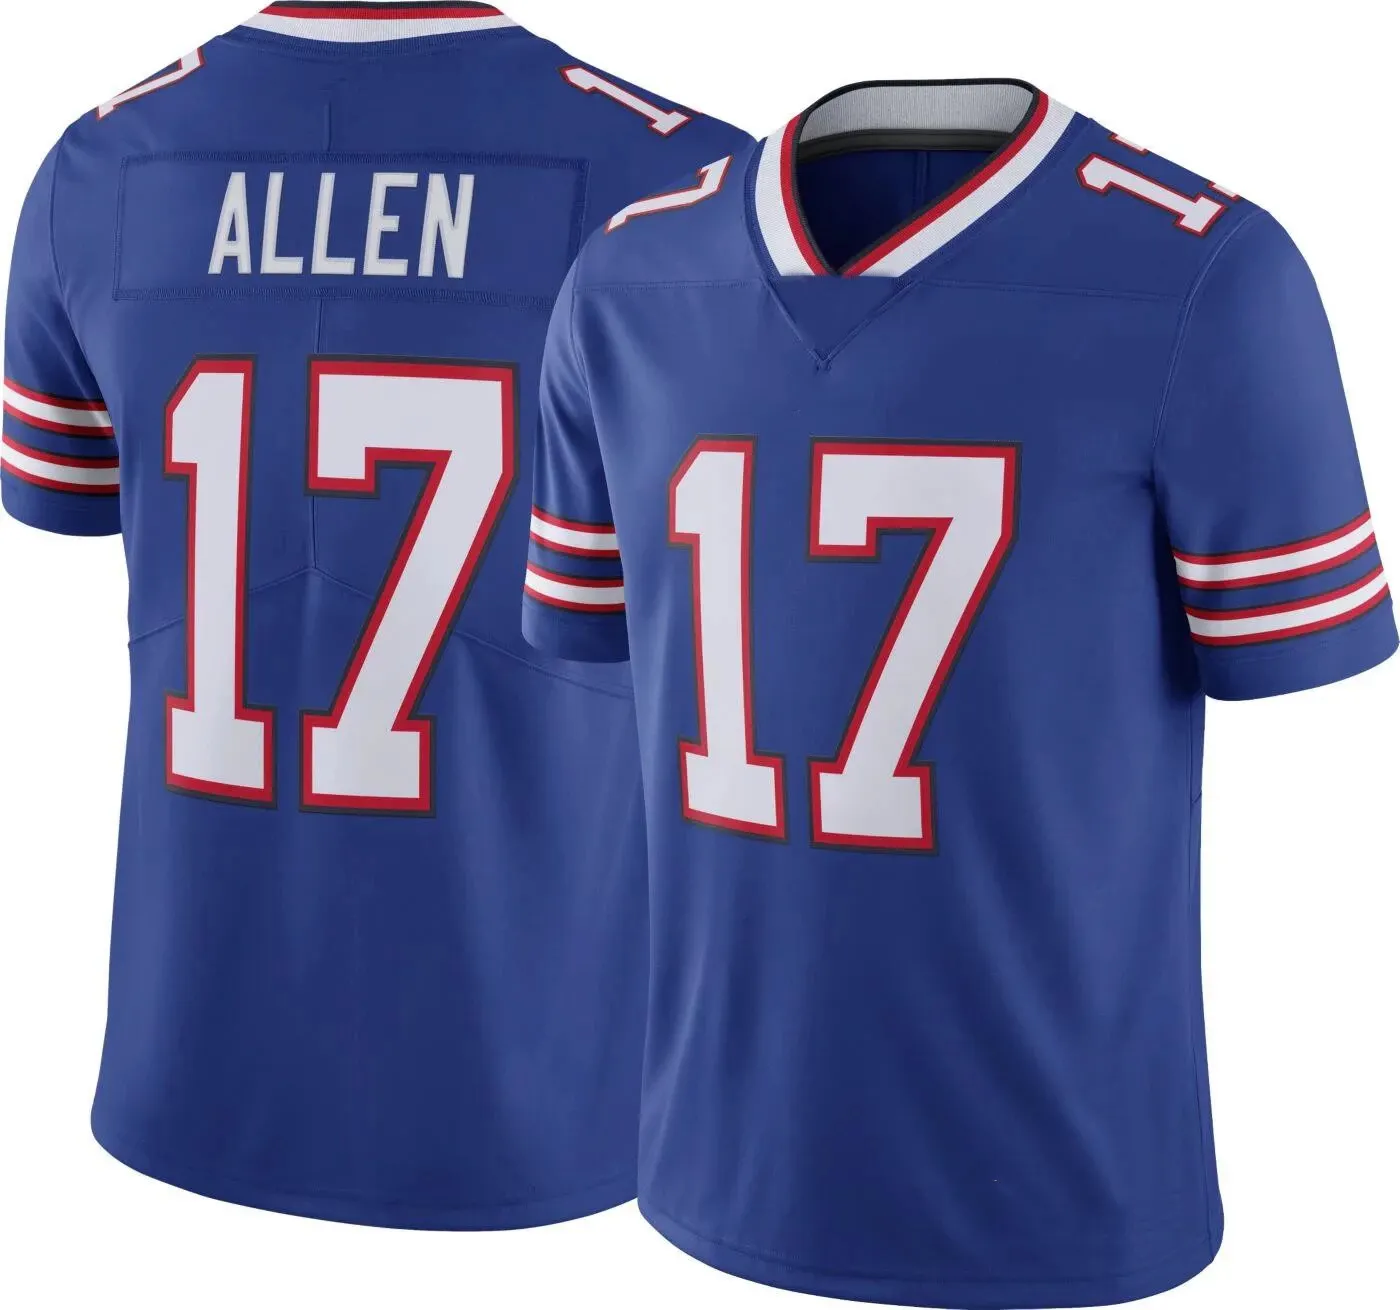 Camisetas personalizadas de fútbol americano, ropa deportiva de Rugby con bordado personalizado de 38 cm, 14 cm, Stefon, dijgs, 17, Luke Allen